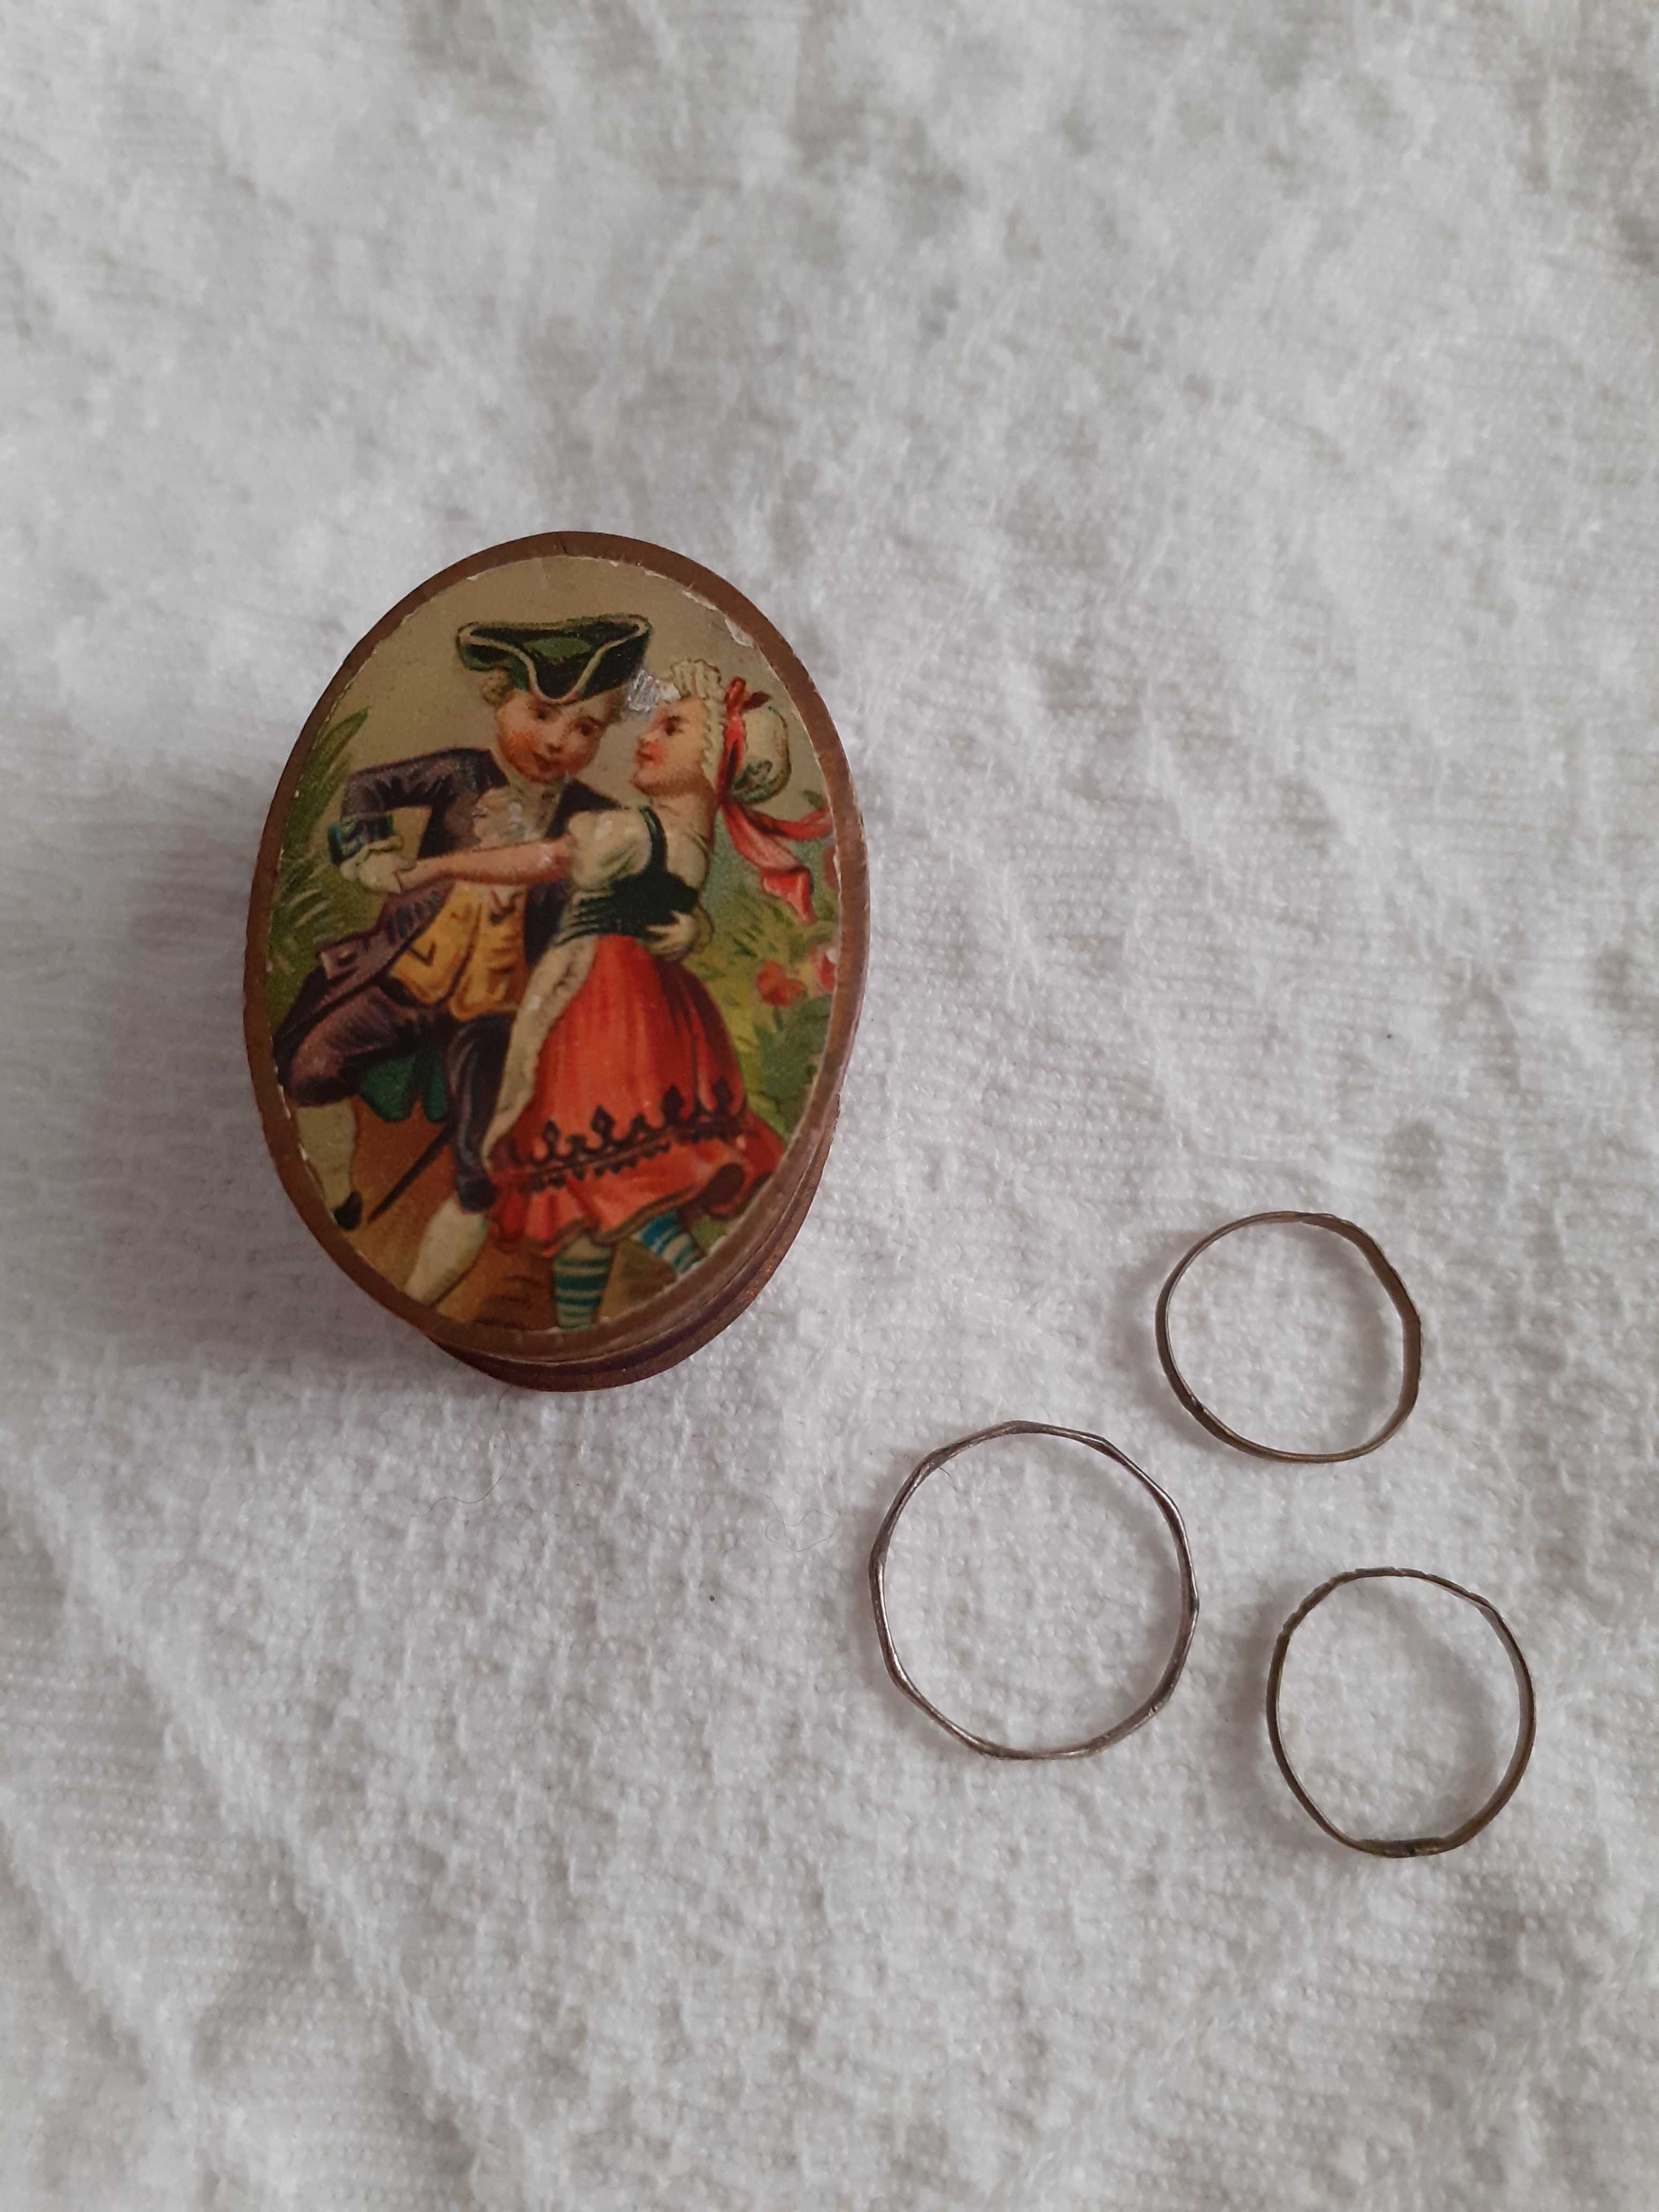 Caixa de brincar com aneis de criança com + de cem anos